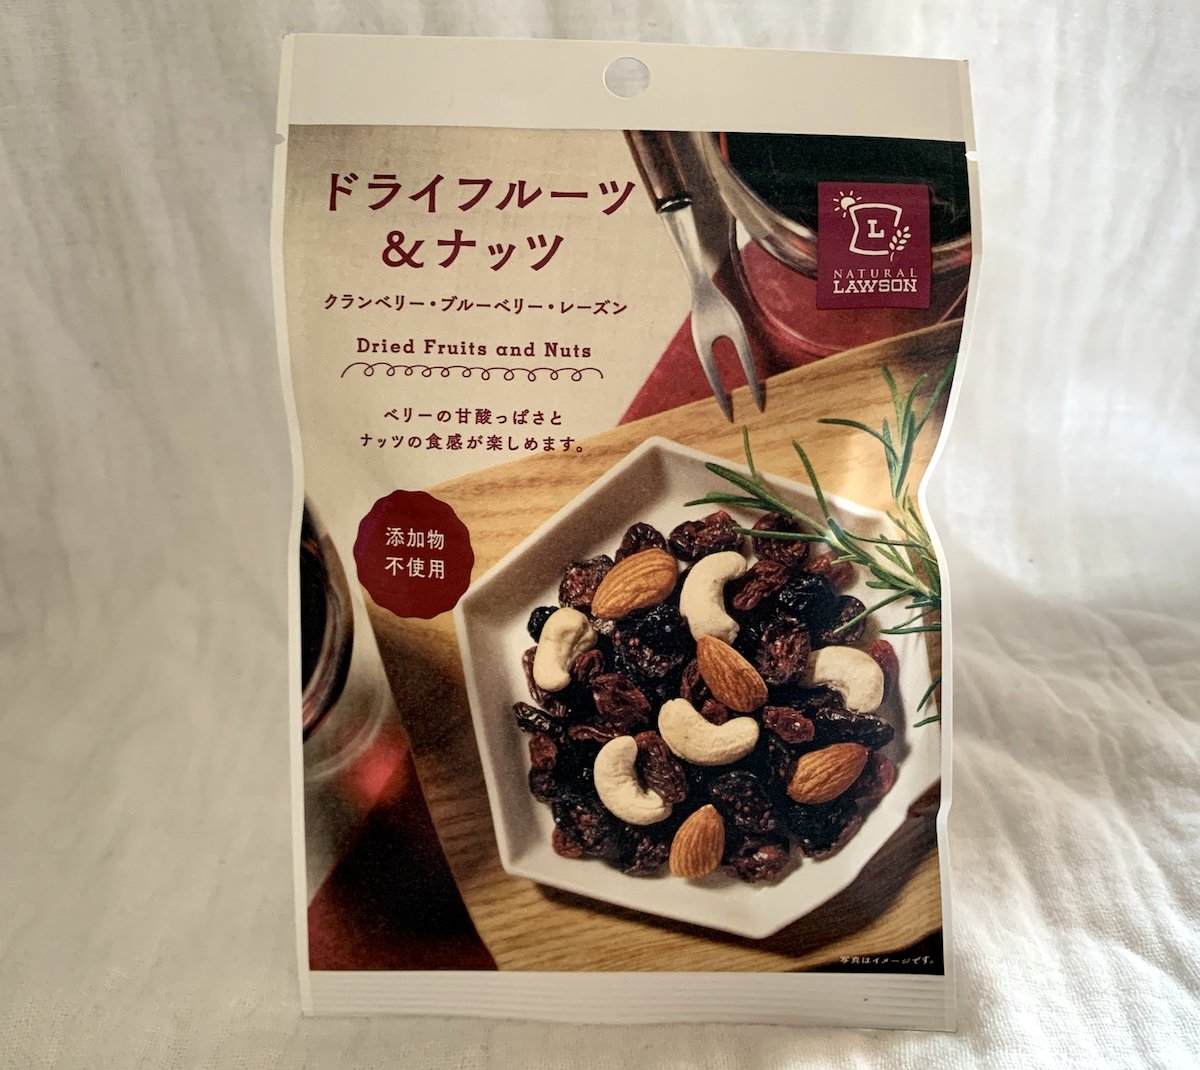 じゃがりこ 和菓子も 外国人が選んだ日本の美味しい コンビニお菓子 はどれ ページ 2 5 Trip Editor